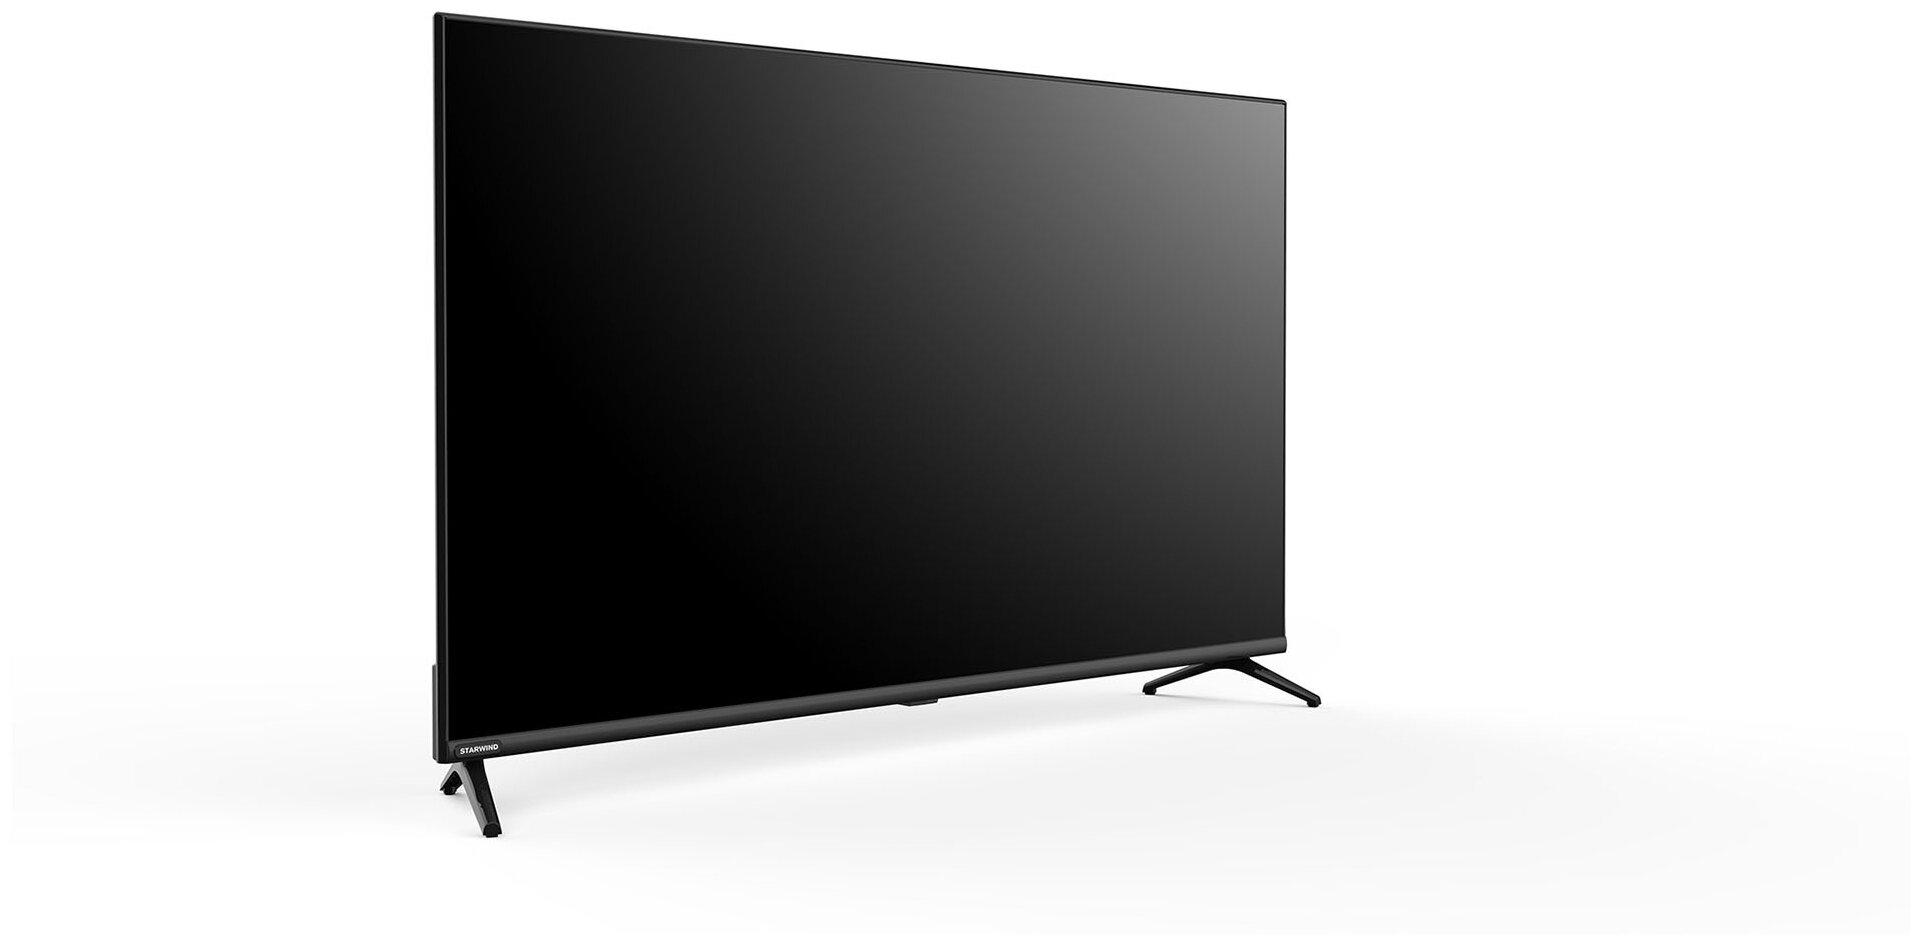 Телевизор Starwind Яндекс.ТВ SW-LED43SG300, 43", LED, FULL HD, Яндекс.ТВ, черный - фото №4